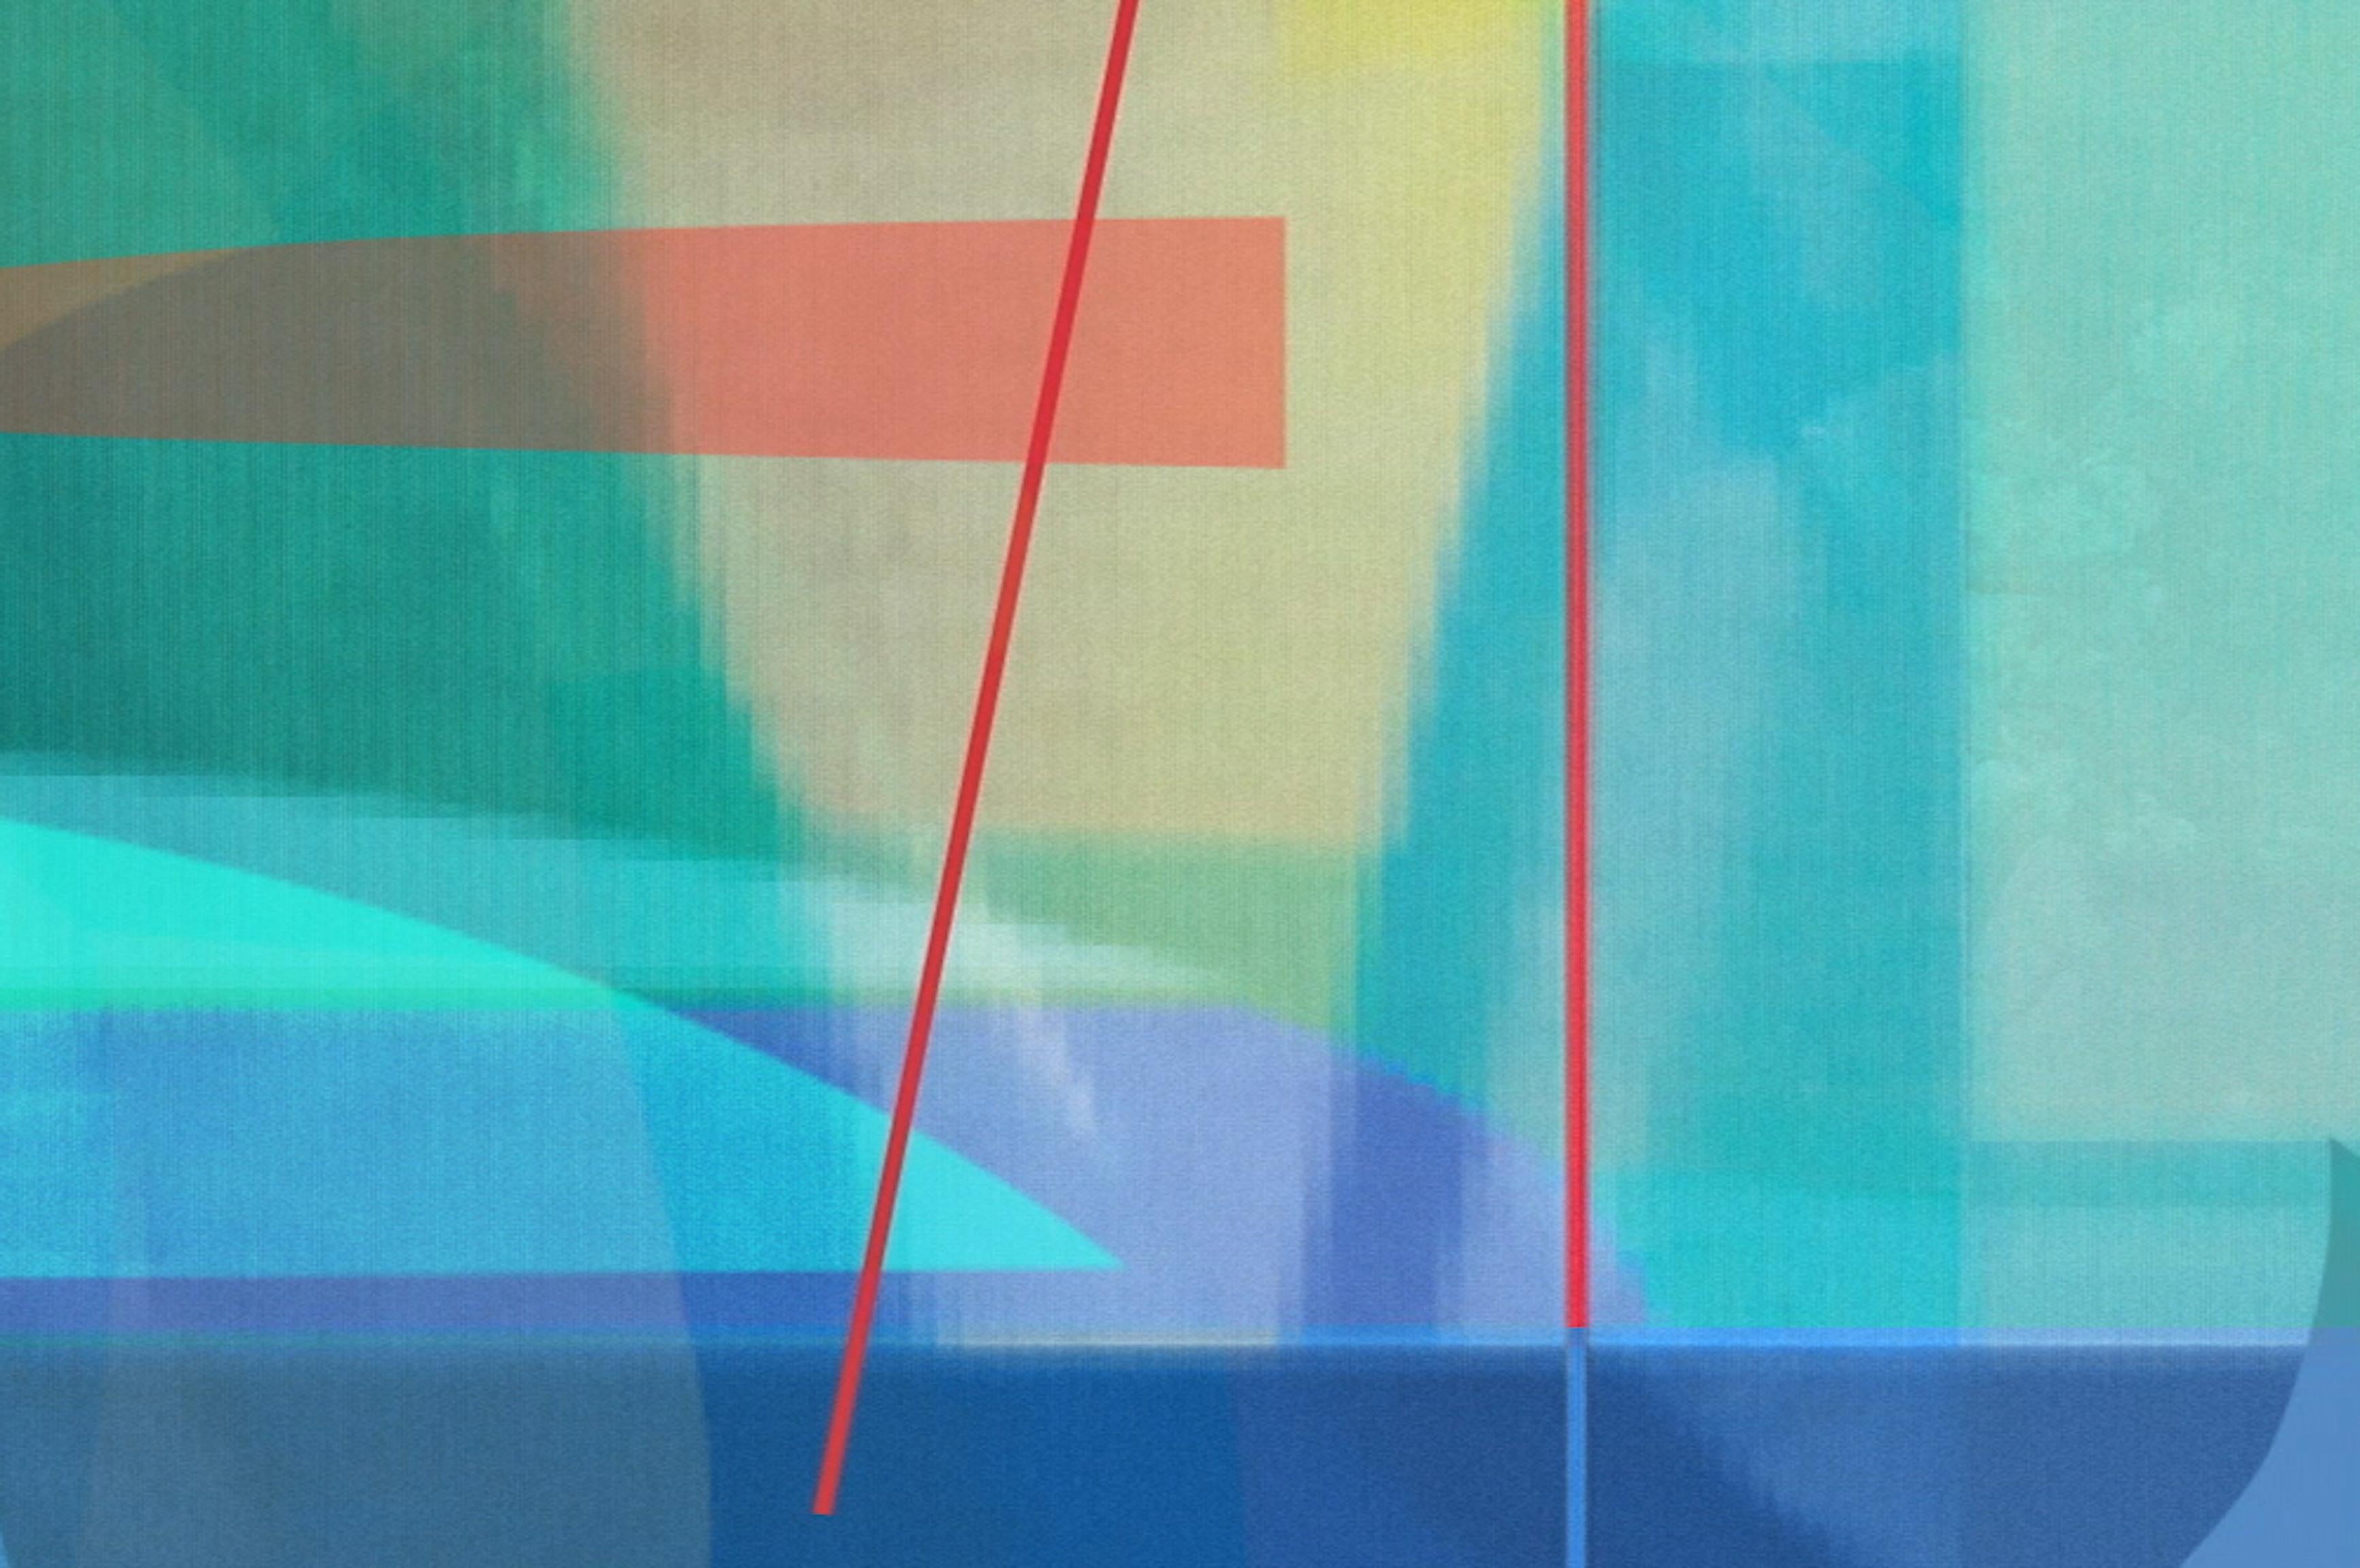 Zeitlos 20. Abstrakte Farbfotografie in limitierter Auflage (Geometrische Abstraktion), Photograph, von Monika Bravo